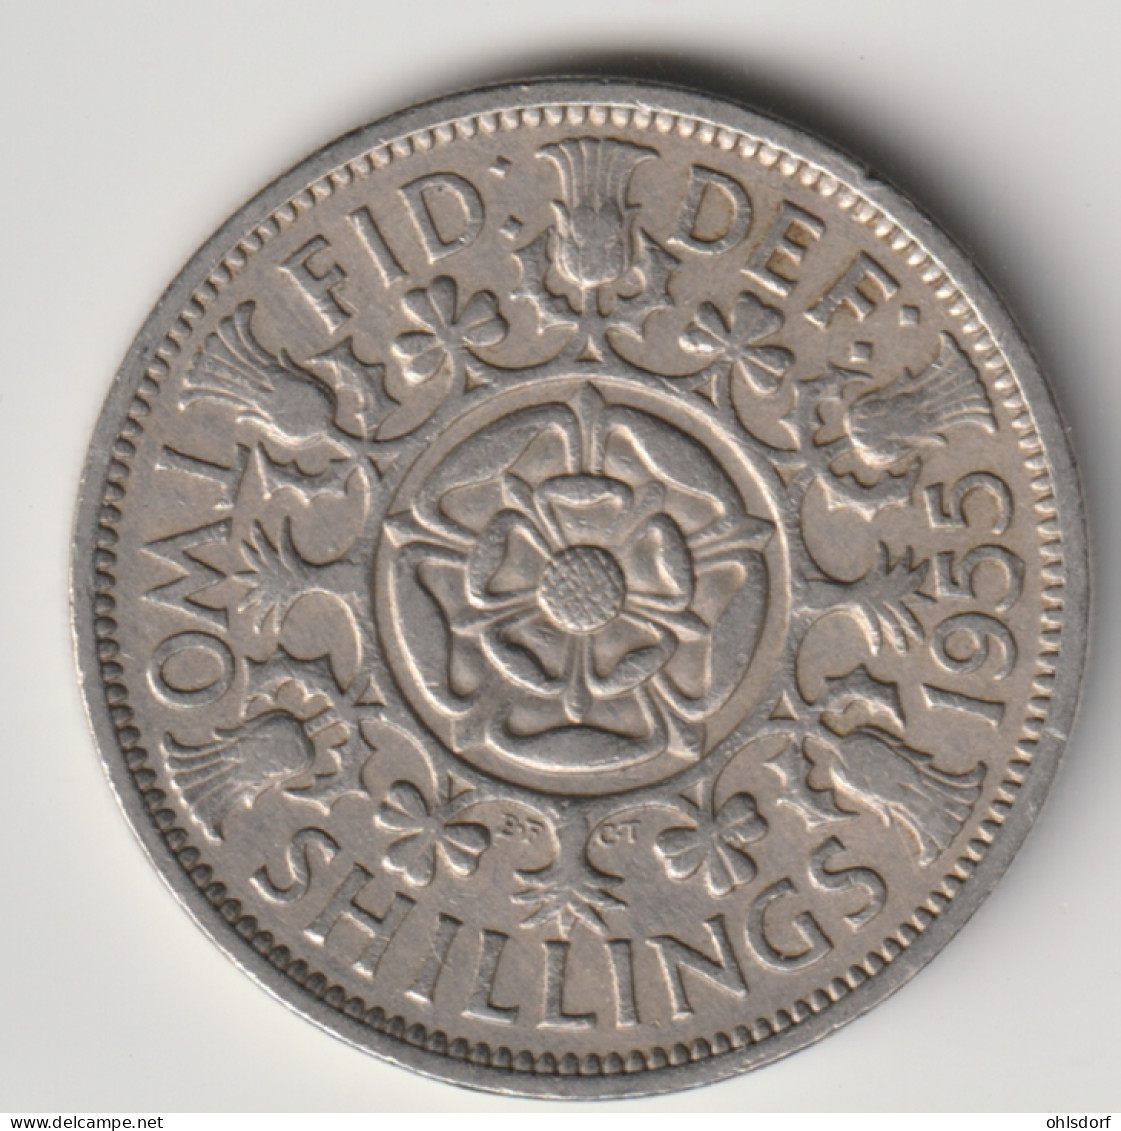 GREAT BRITAIN 1955: 2 Shillings, KM 906 - J. 1 Florin / 2 Schillings